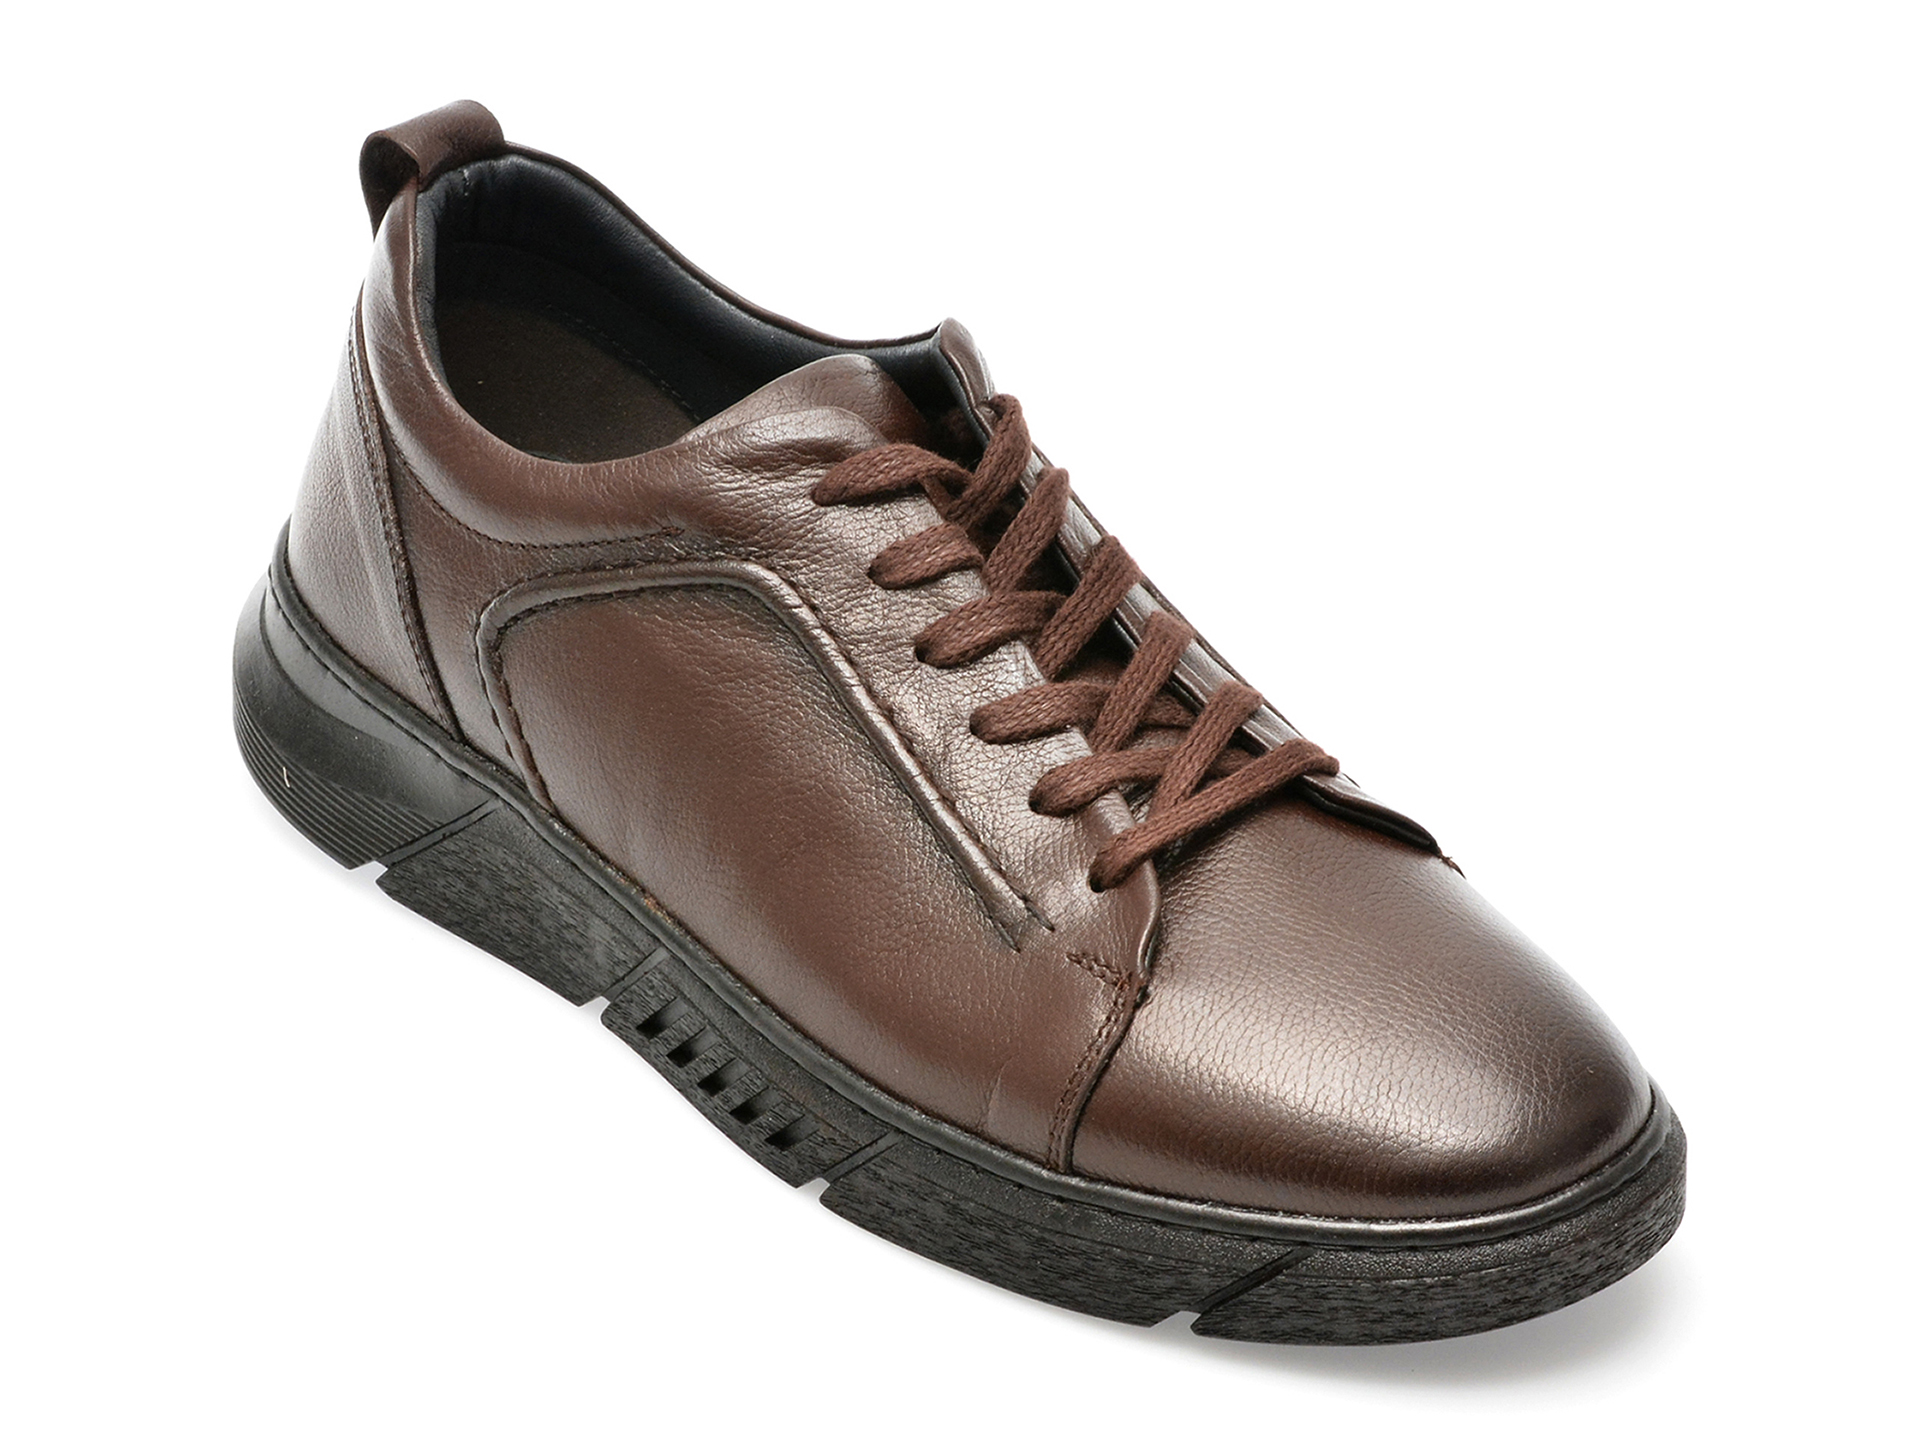 Pantofi AXXELLL maro, ER801, din piele naturala /barbati/pantofi